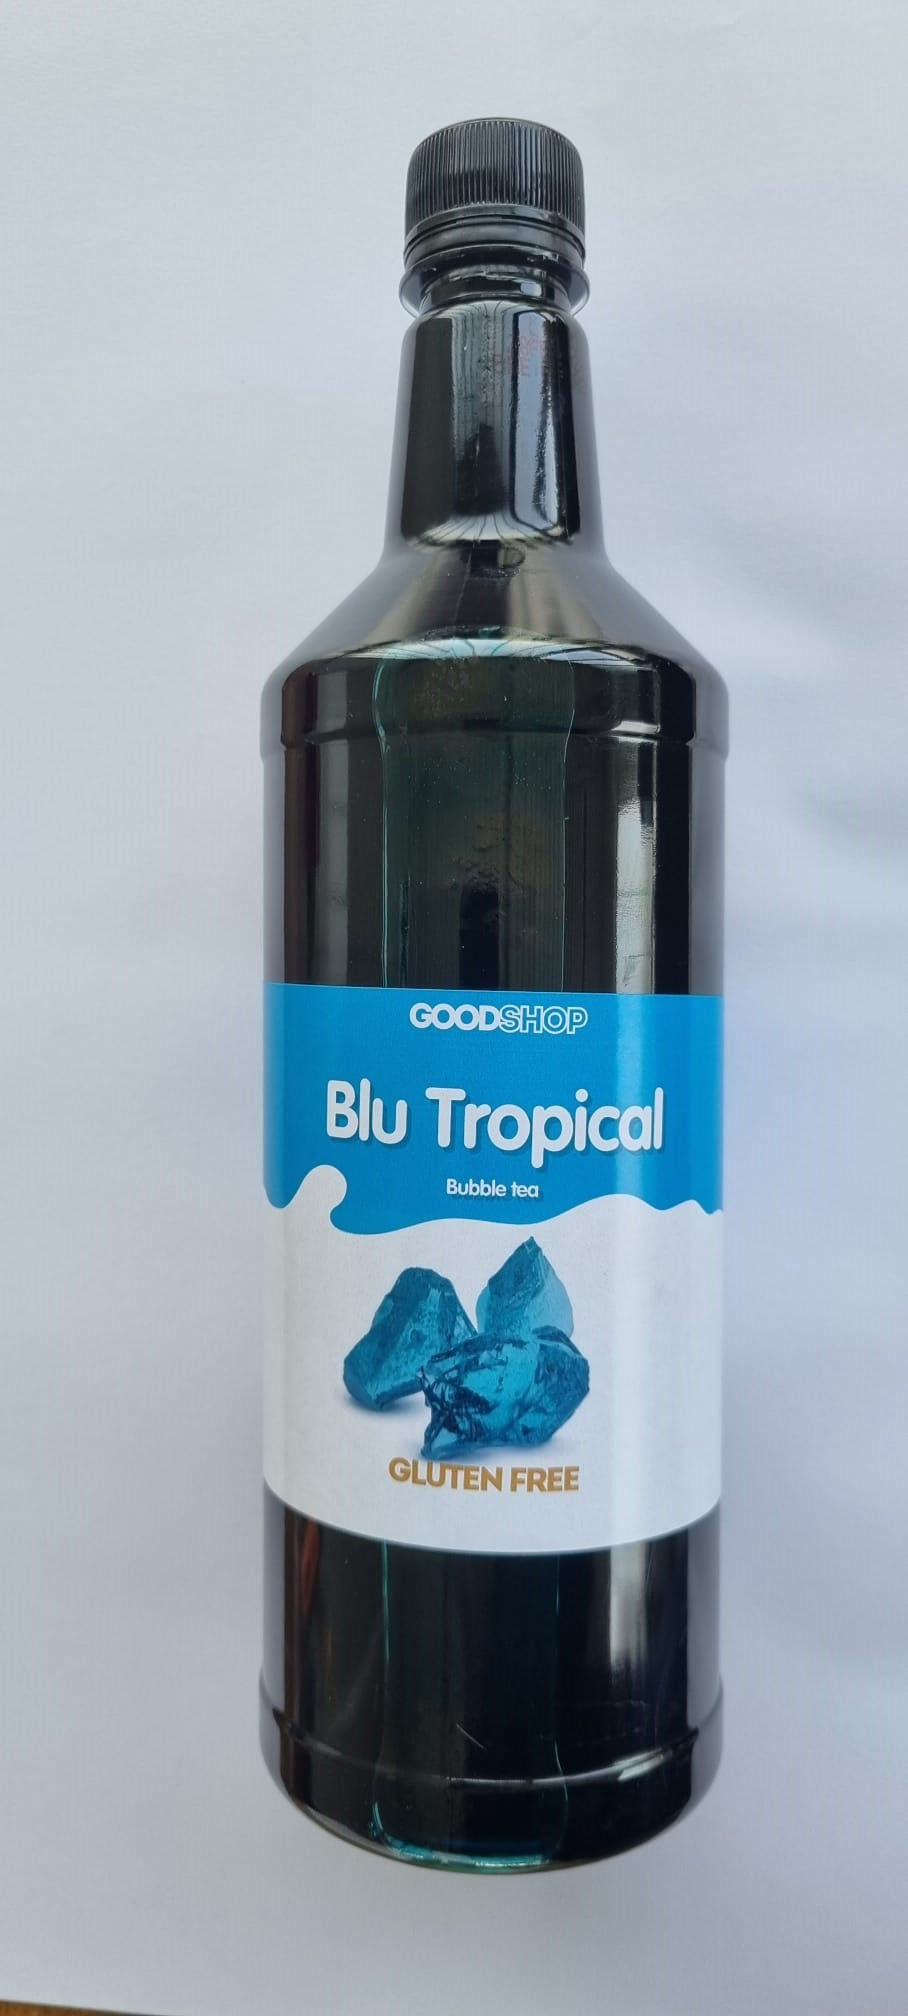 Concentrato blu tropical per Bubble Tea (1 KG)